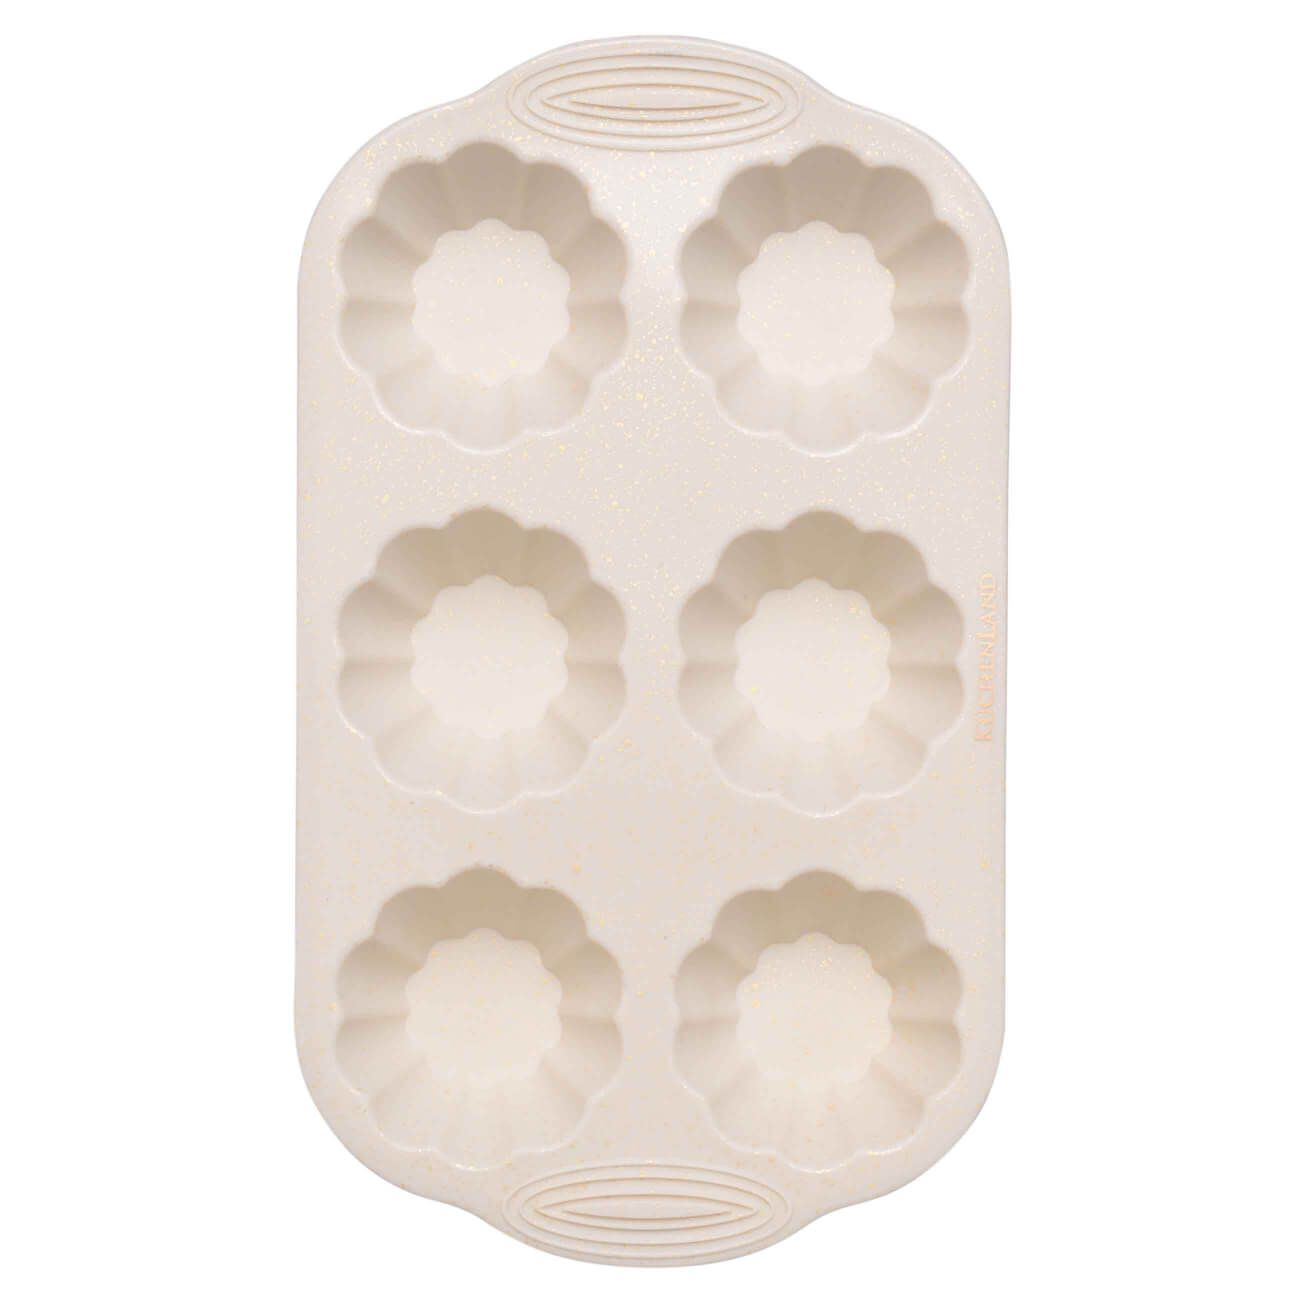 Форма для выпечки кексов, 28x19 см, 6 отд, молочная, в крапинку, силикон, Bakery speckled коврик антипригарный для кексов прямоугольный nostik